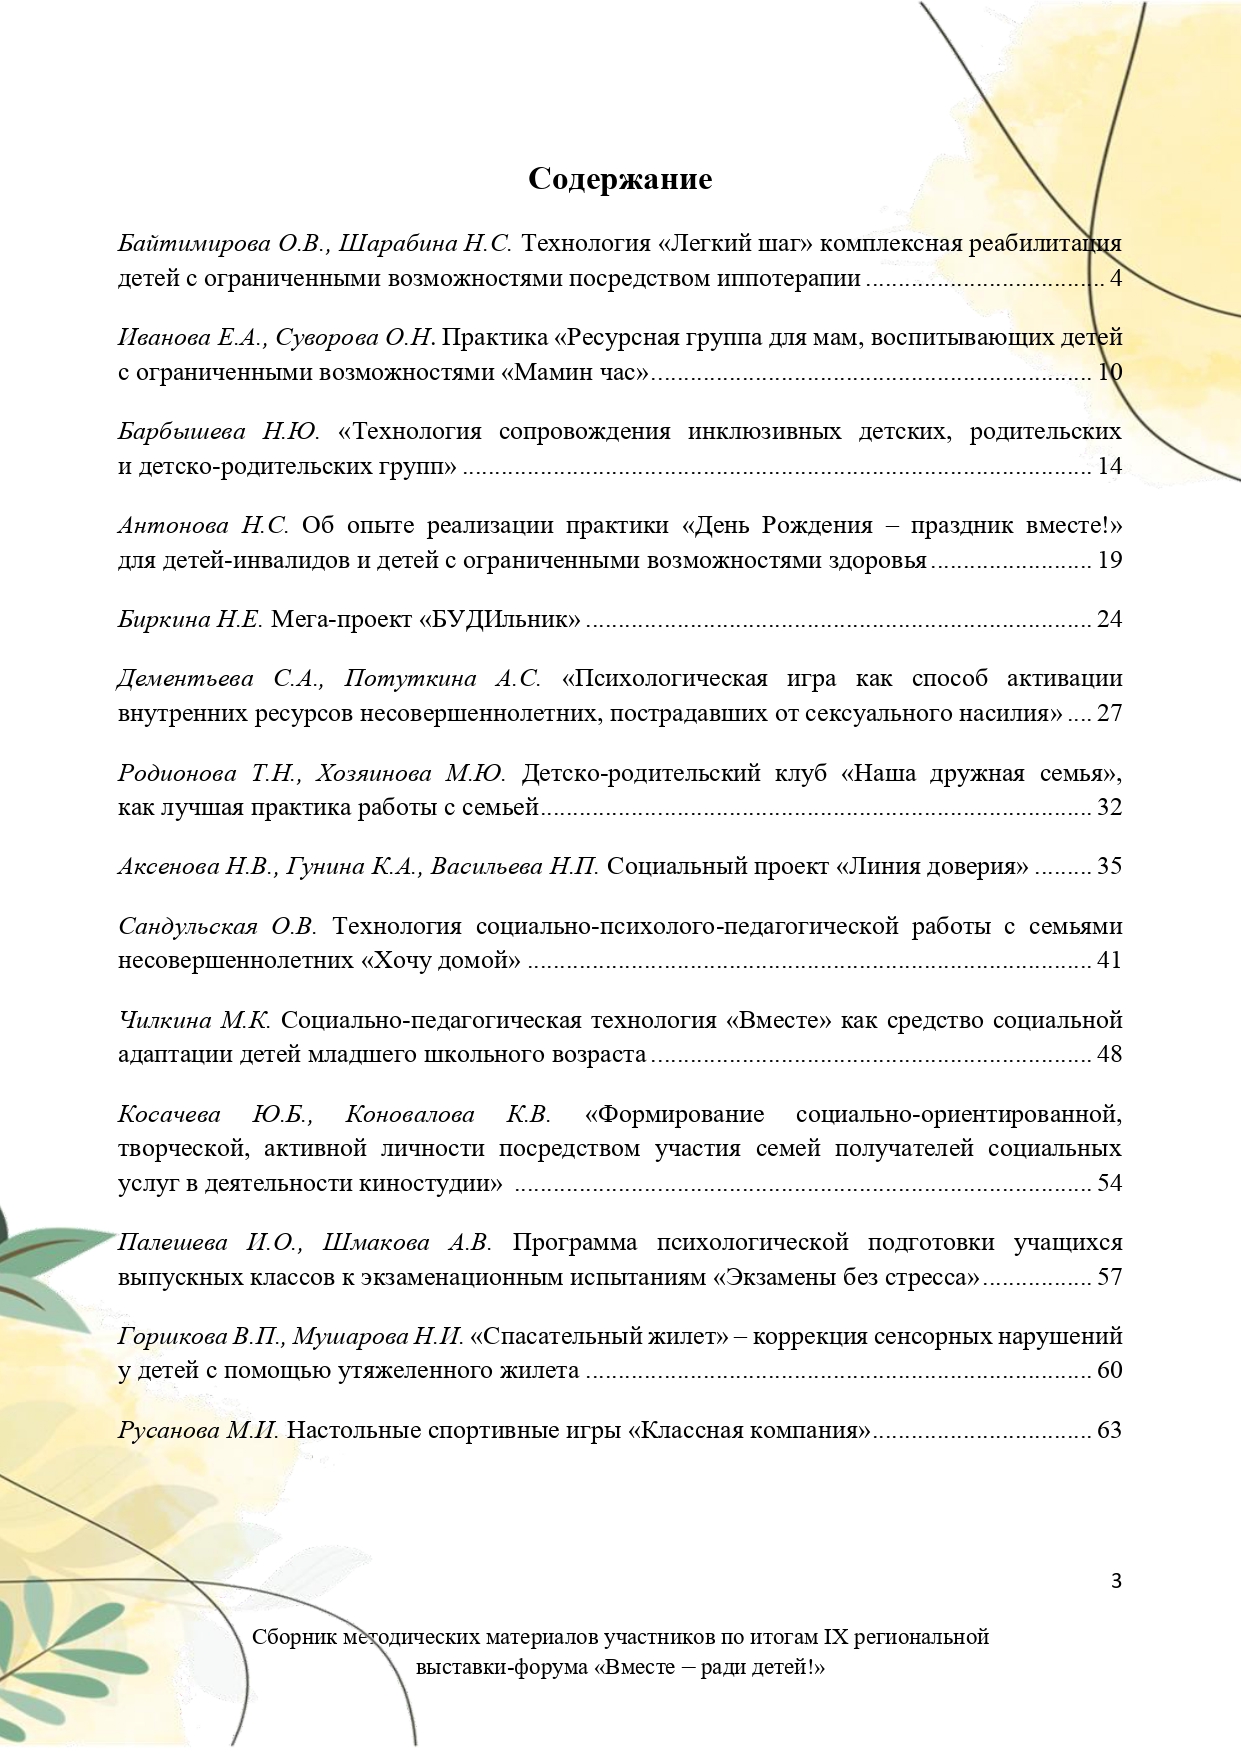 Sbornik_metodicheskikh_materialov_uchastnikov_IX_regionalnoy_vystavki-foruma_Vmeste__radi_detey_33__2023_page-0003